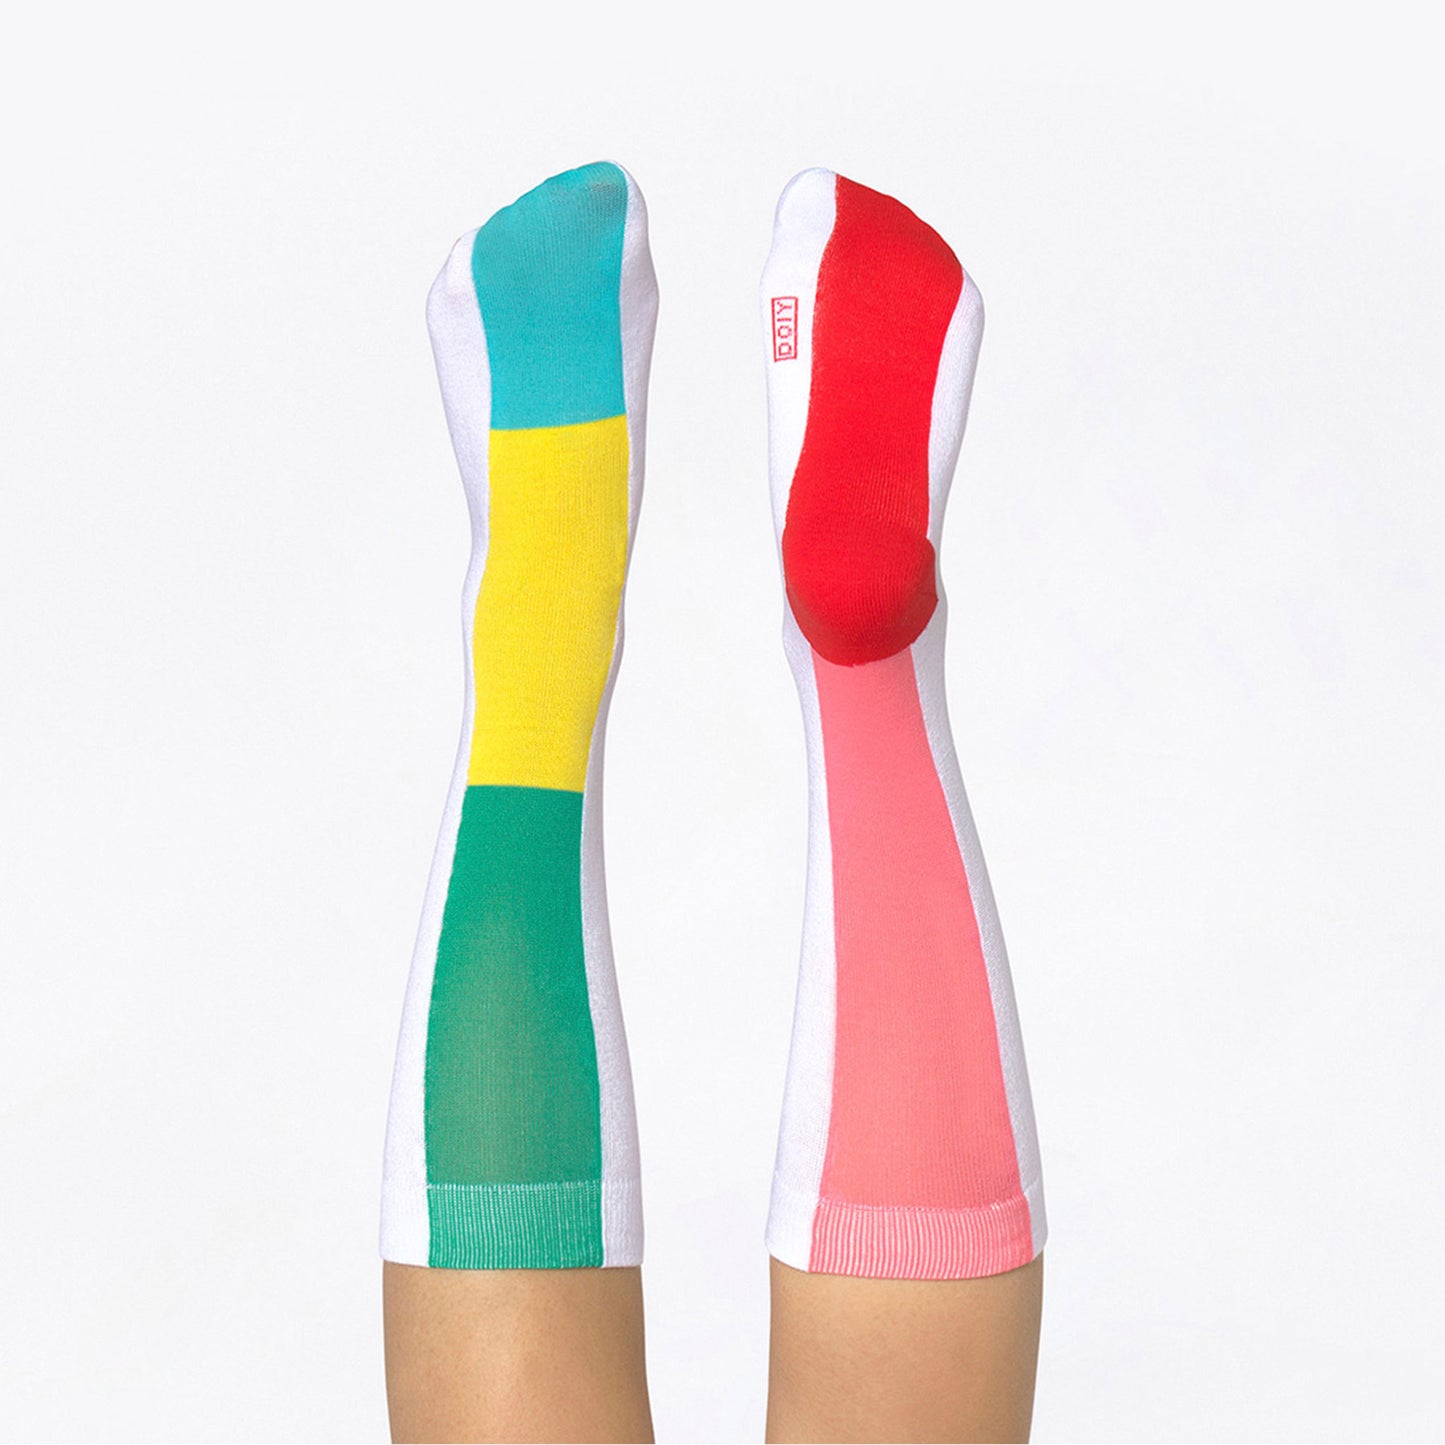 
                  
                    RAINBOW Multi-color Socks
                  
                